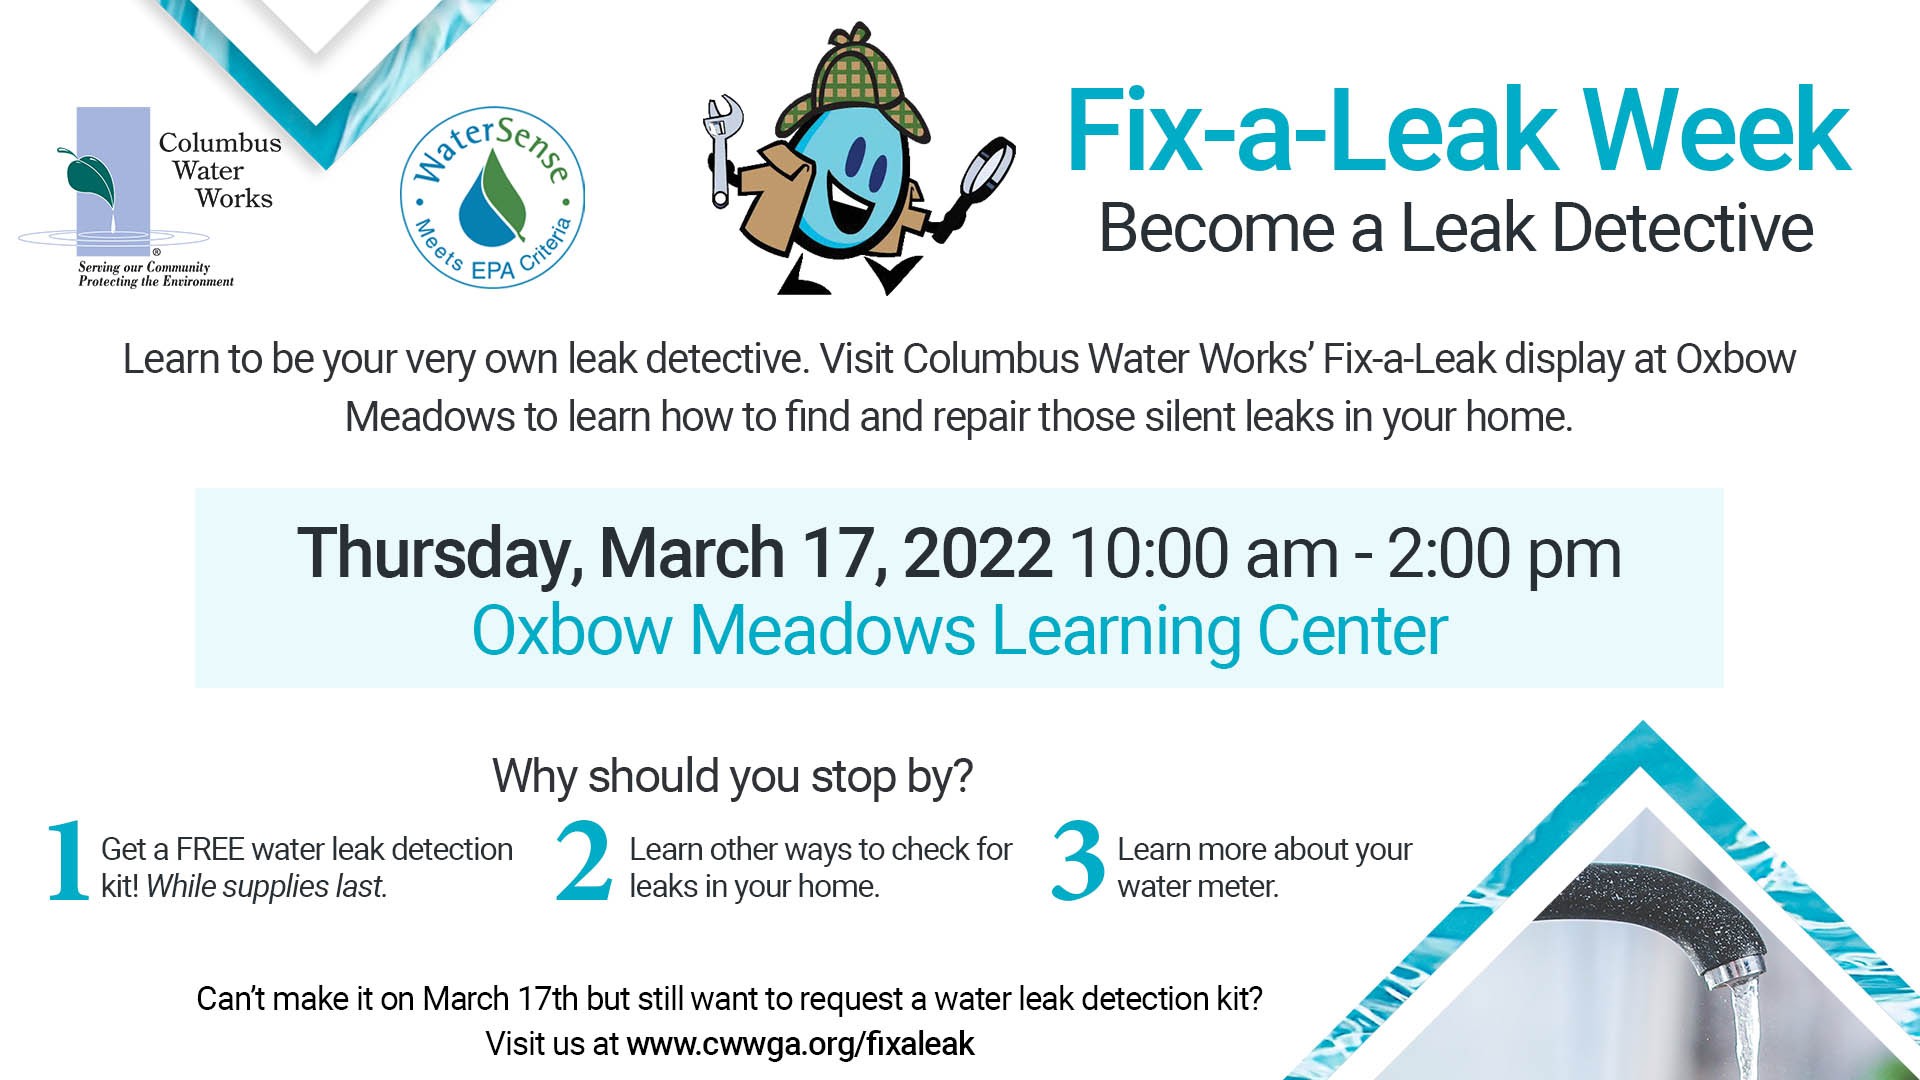 Leak Detection Services in Columbus, GA